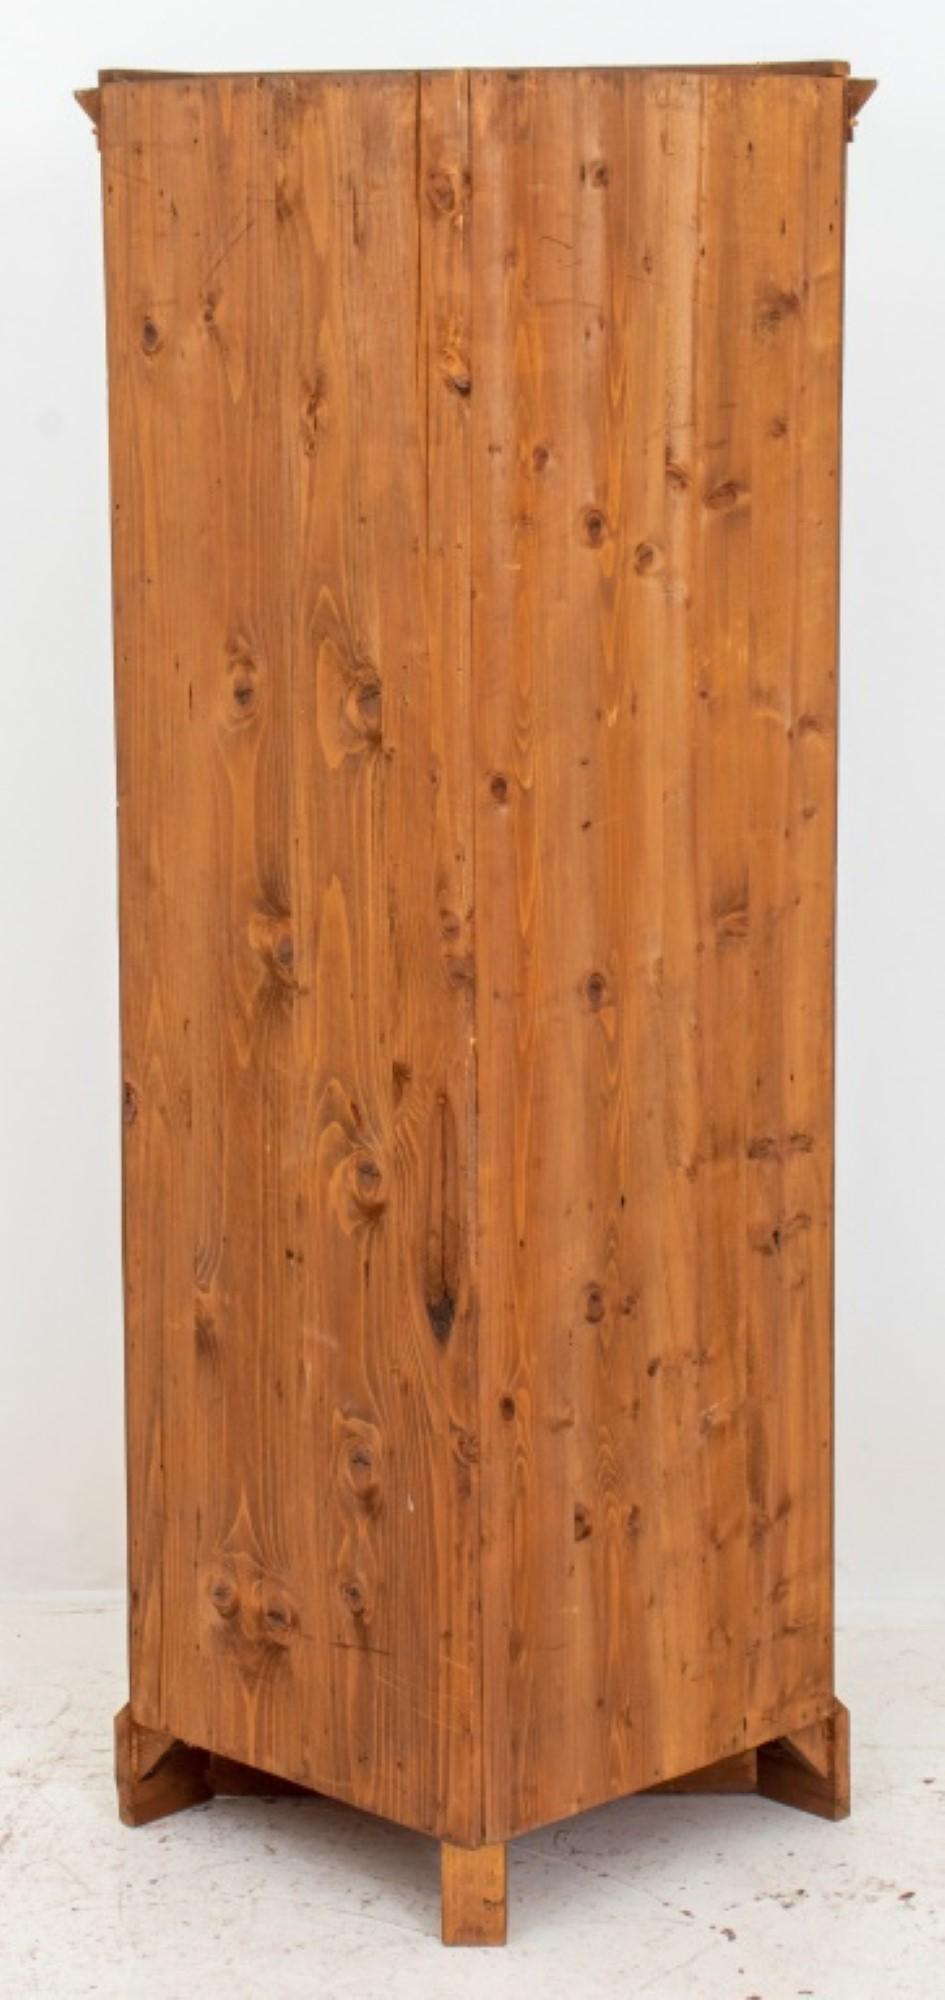 Österreichischer Biedermeier-Eckschrank aus ebonisiertem Nussbaumholz, mit einer schrägen Platte über einer dreifach verglasten Tür, die sich öffnen lässt, um zwei Einlegeböden zu zeigen, auf einem schrägen Sockel, das Innere ist mit